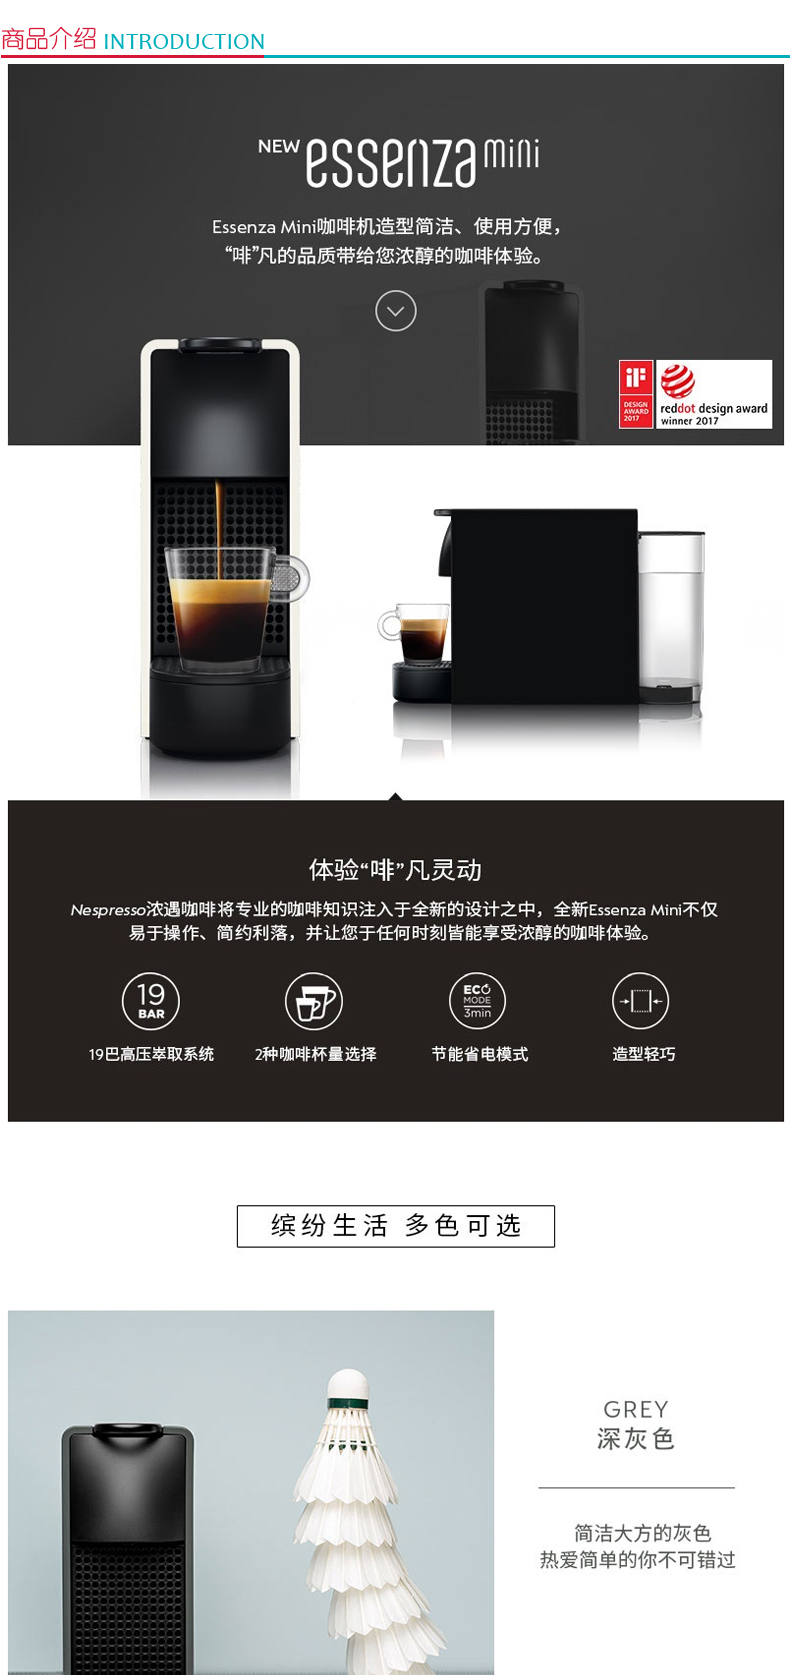 奈斯派索 Nespresso Essenza mini 全自动胶囊咖啡机 C30 (灰色)